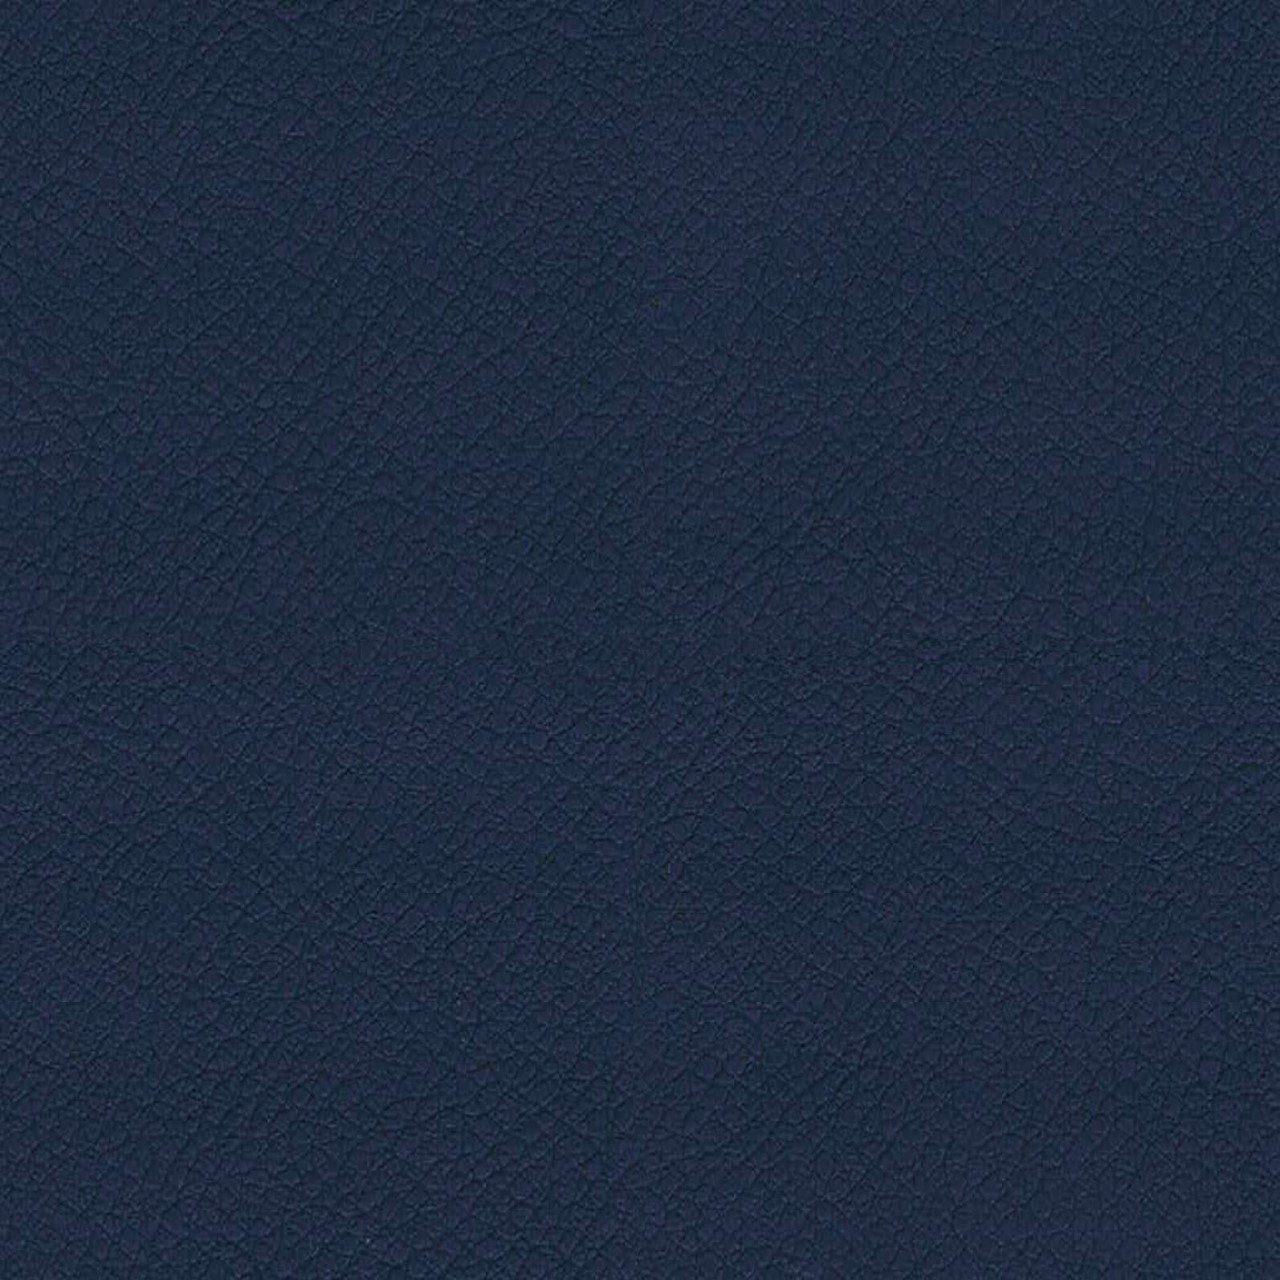 Donker blauwe kleur die beschikbaar is voor de sledeframe fauteuil Laila van FP Collection